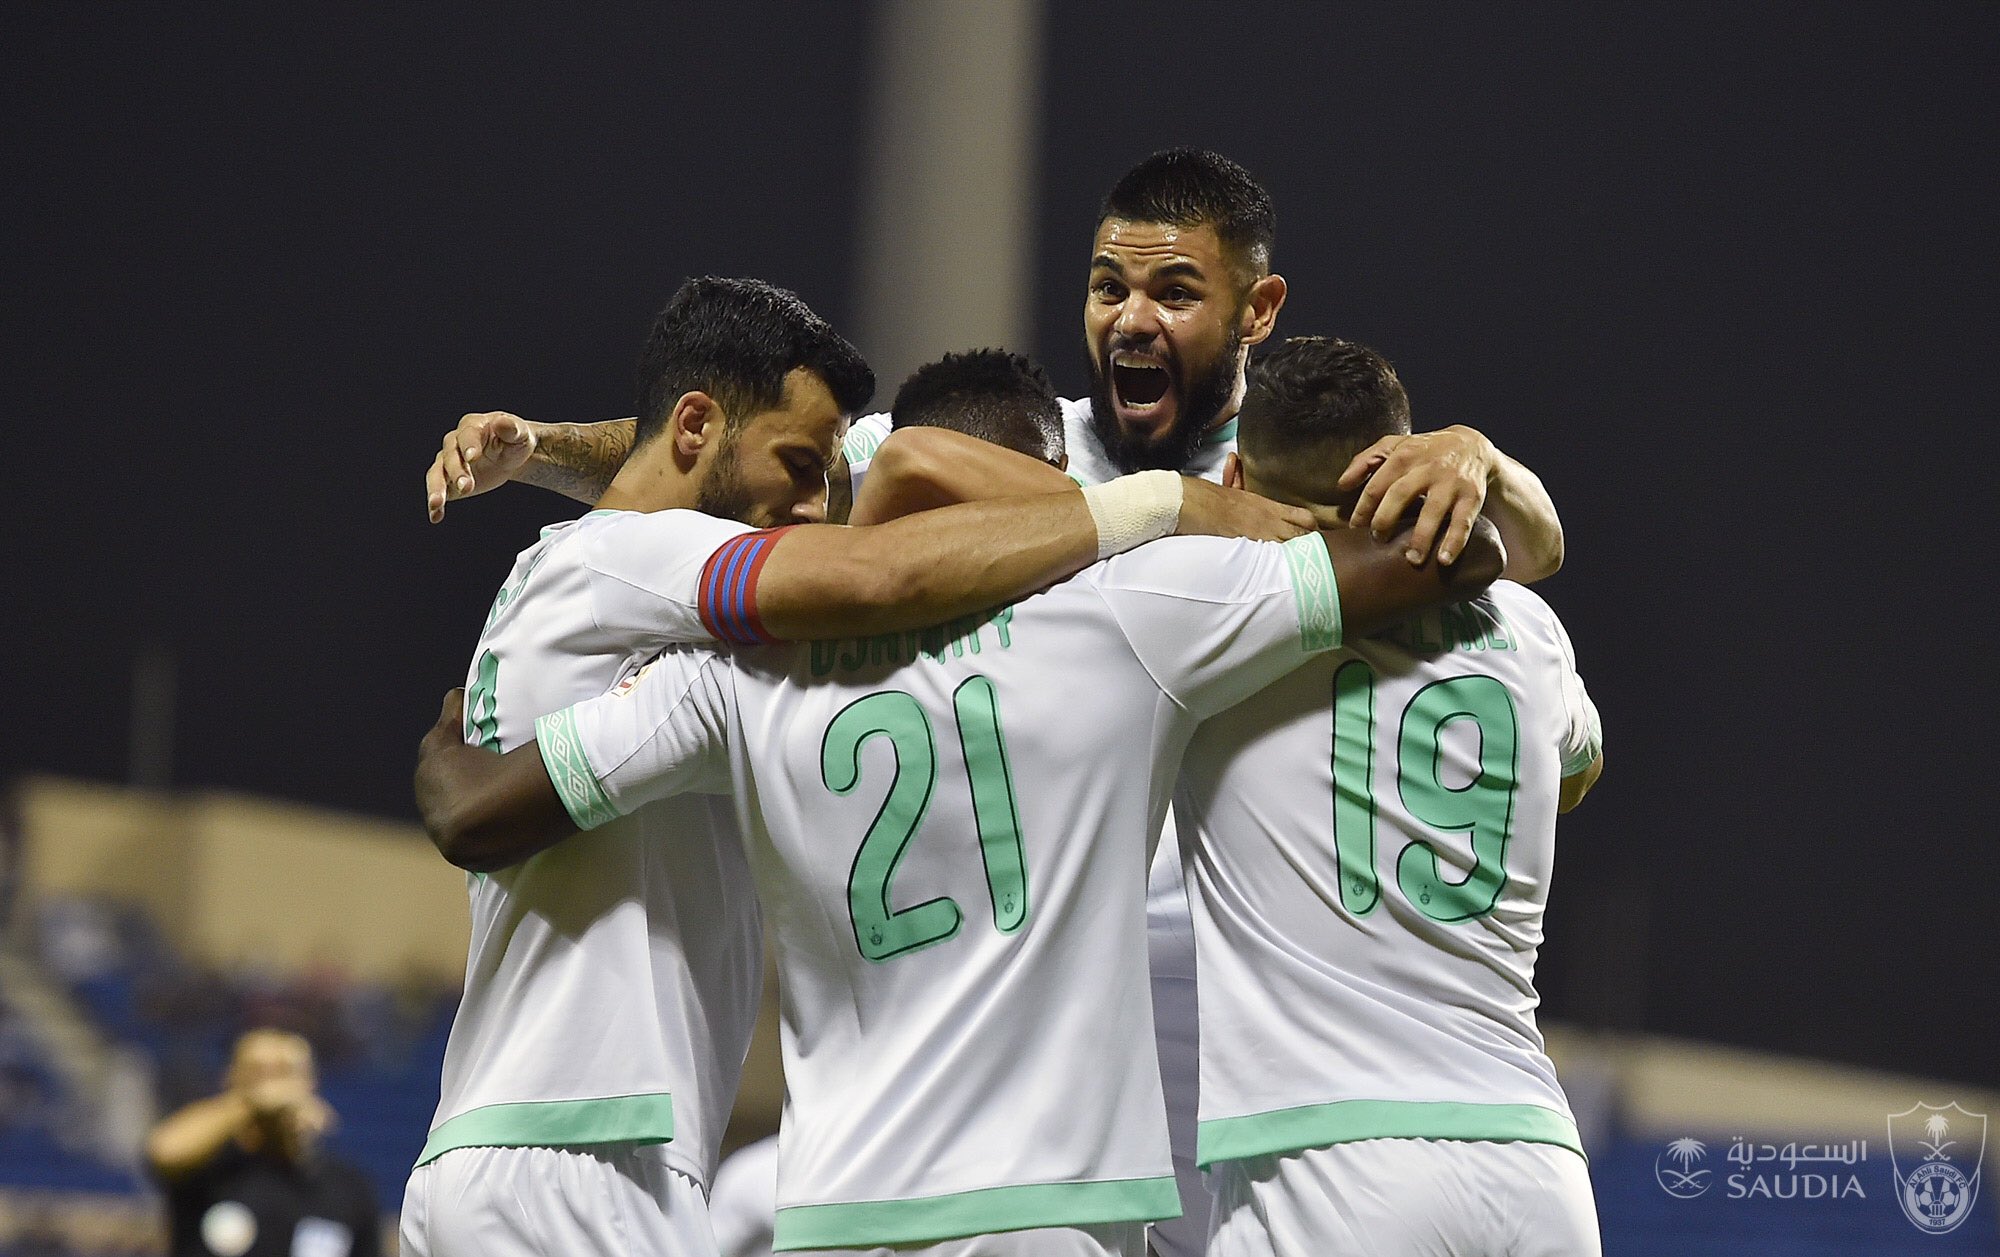 الأهلي يستعيد توازنه بالفوز على الفتح في الدوري السعودي فيديو ستاد الأهلي